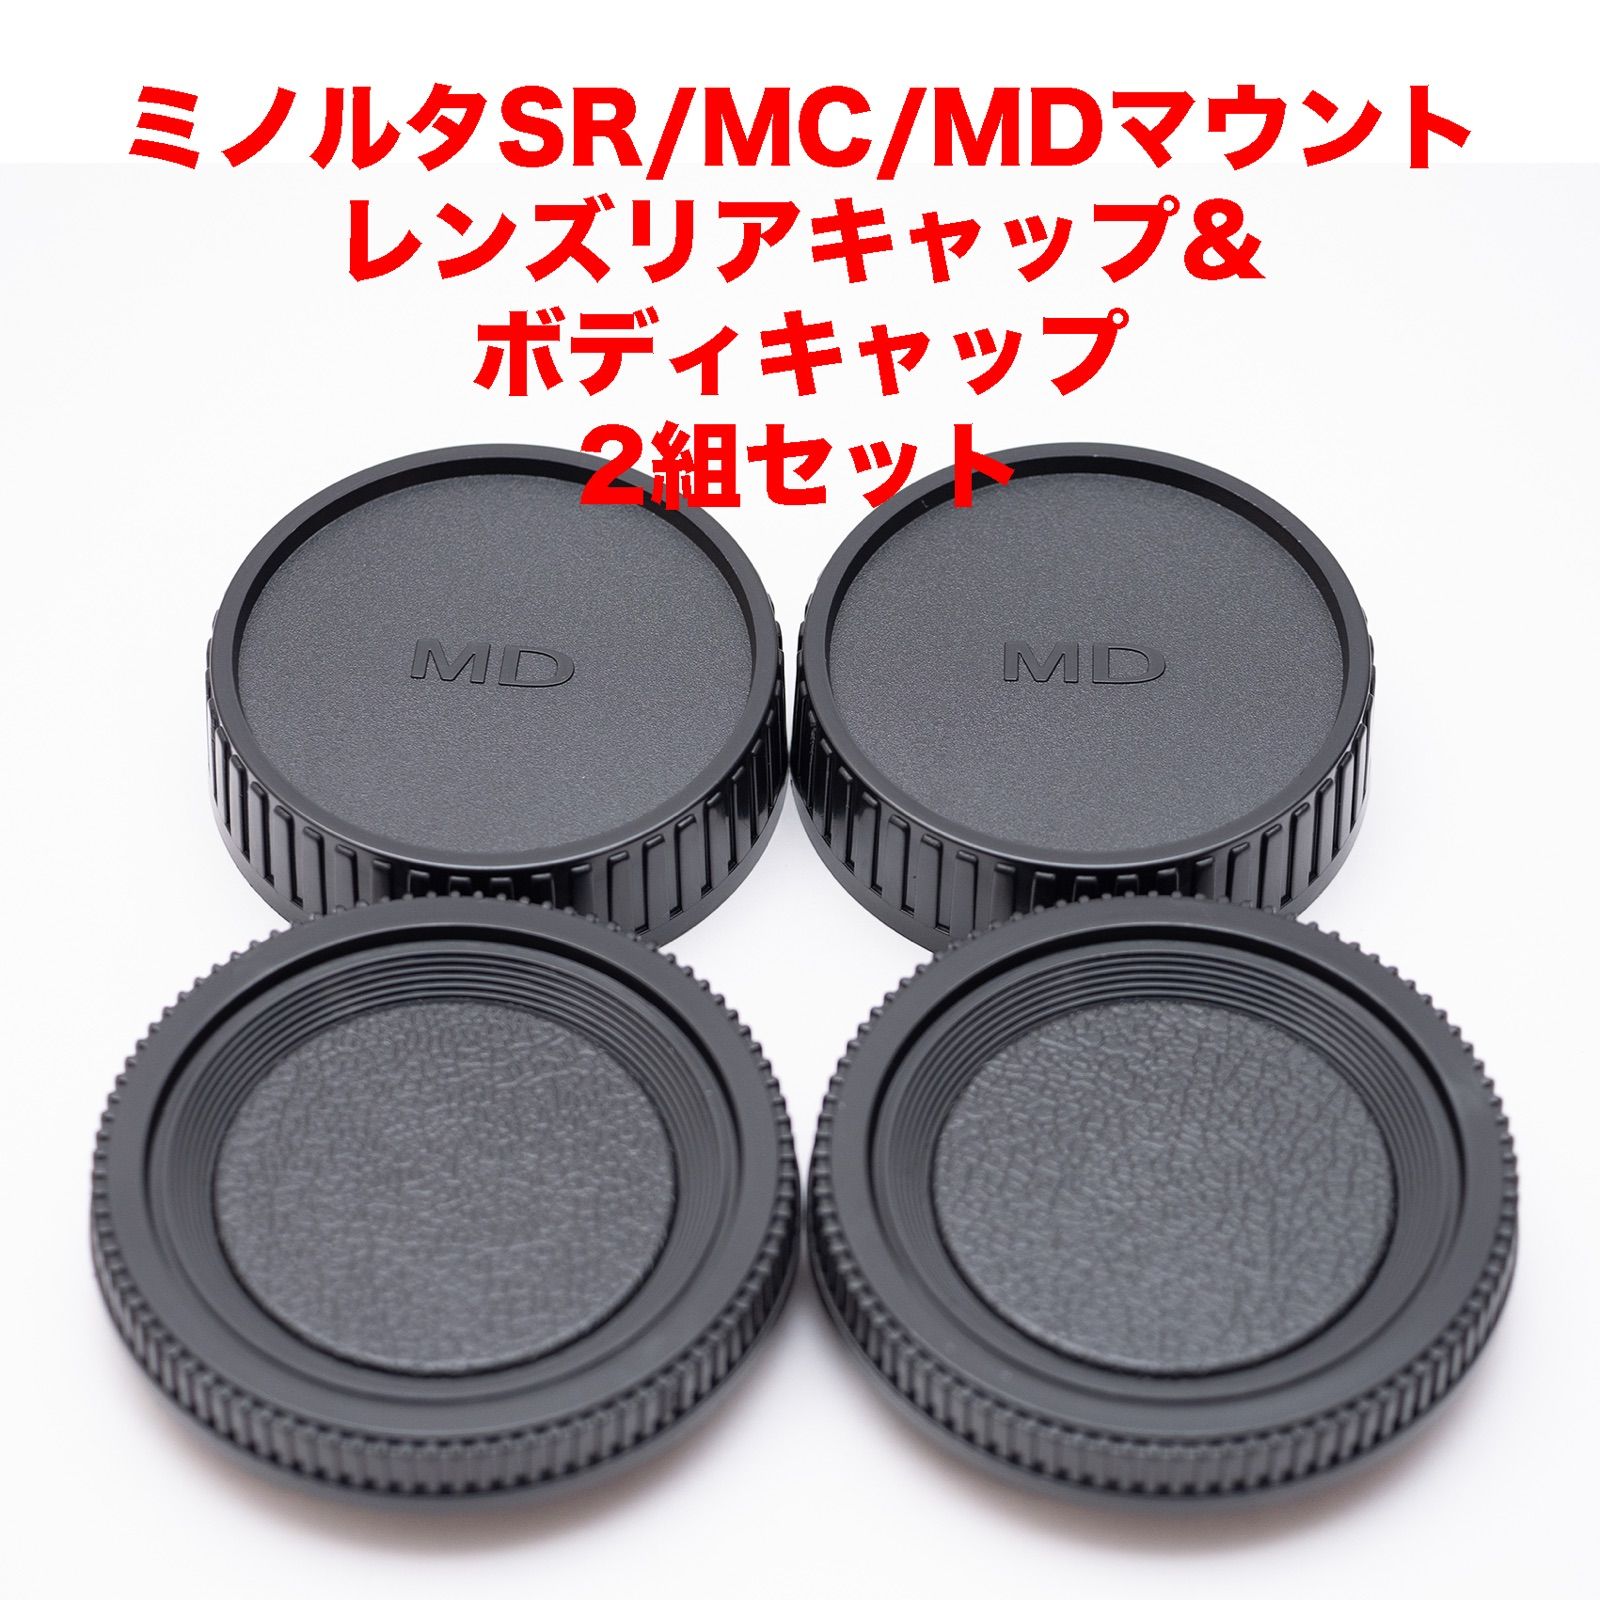 無料配達 ミノルタ SR MC MDマウント レンズリアキャップ 3つセット